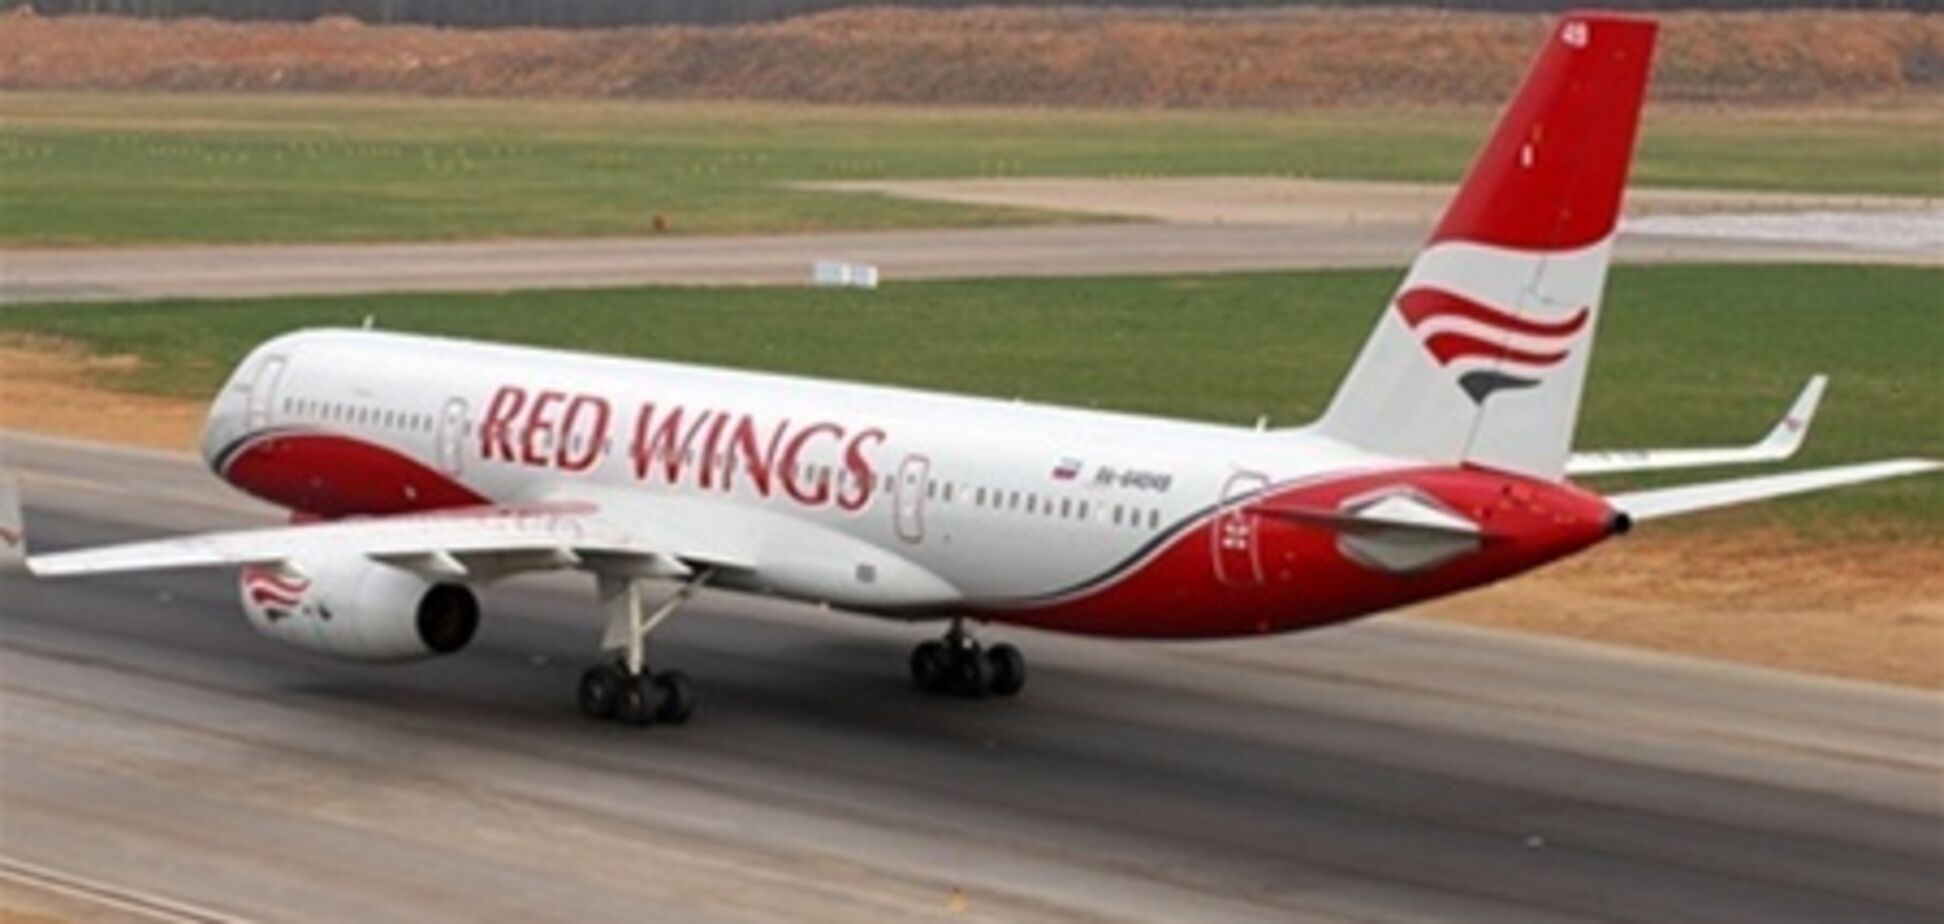 Росавиация вернула лицензию Red Wings